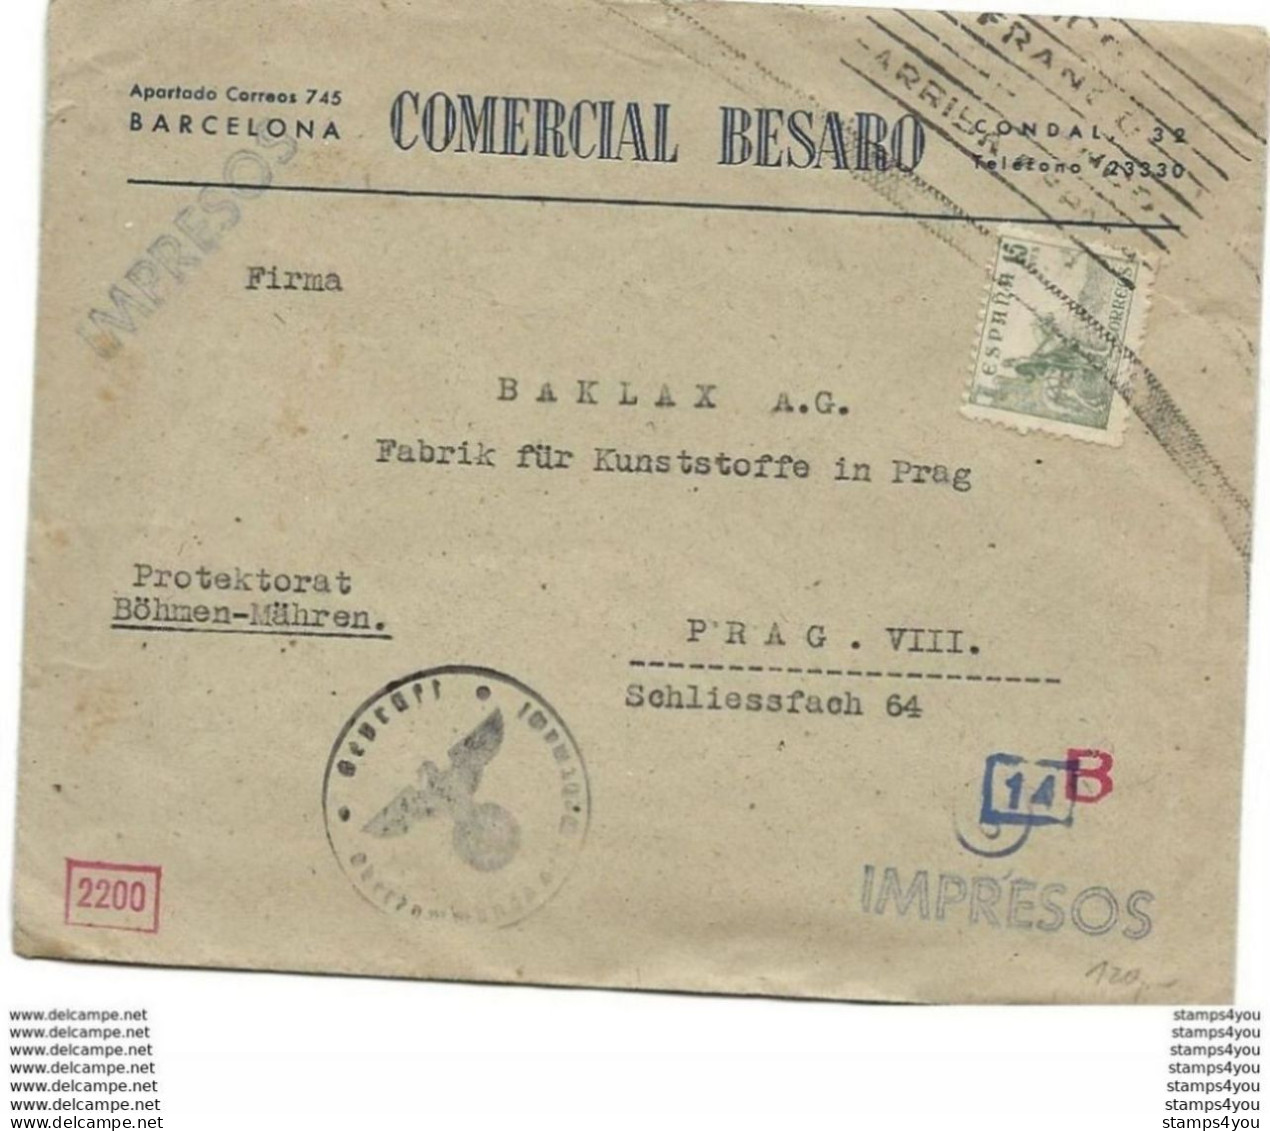 221 - 9 - Enveloppe Envoyée De Barcelona à Prag - Censure - Guerre Mondiale (Seconde)